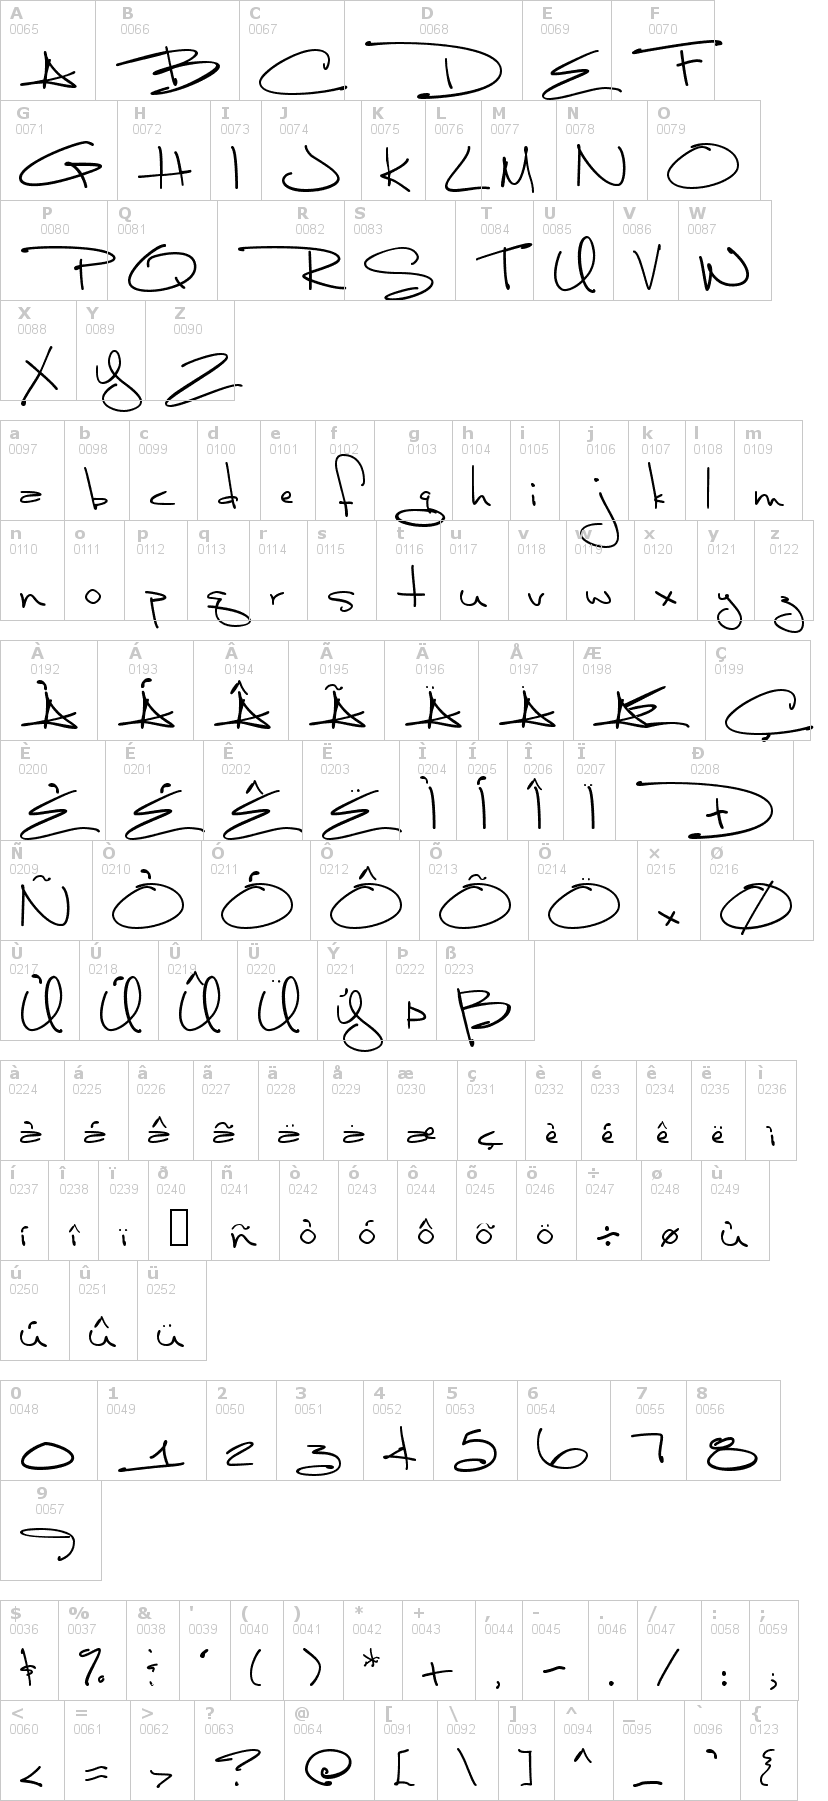 Lettere dell'alfabeto del font luna-bar con le quali è possibile realizzare adesivi prespaziati